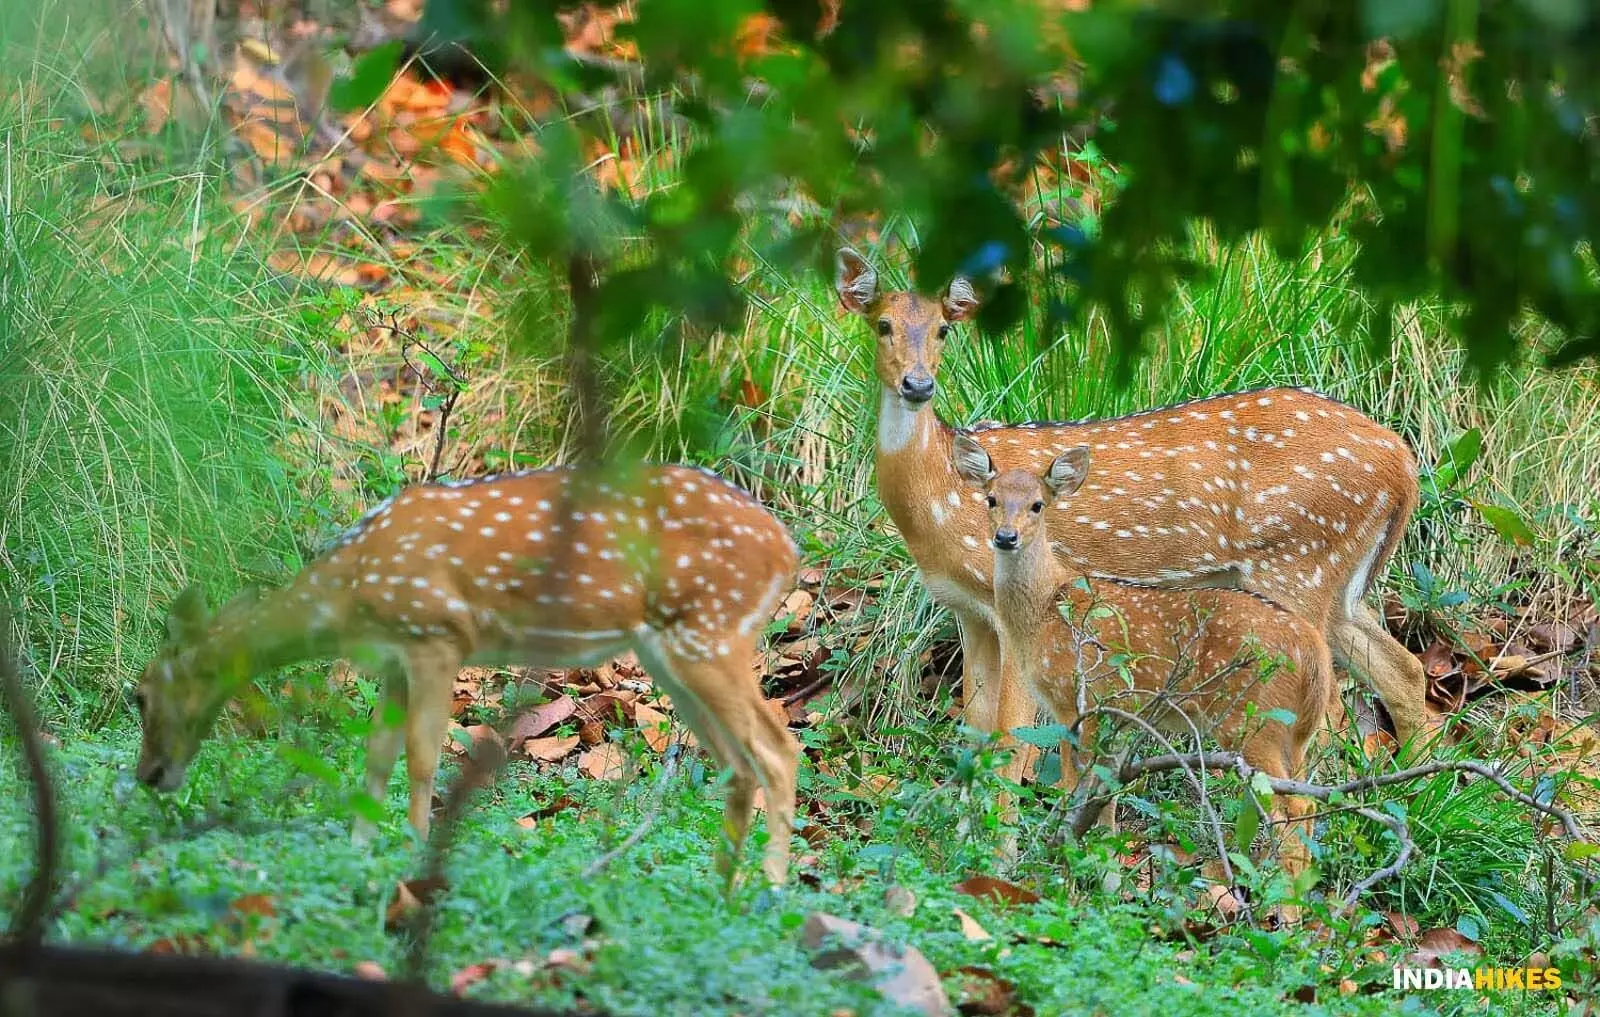 Sambalpur से 115 चित्तीदार हिरणों को देबरीगढ़ अभयारण्य में स्थानांतरित करने की प्रक्रिया शुरू